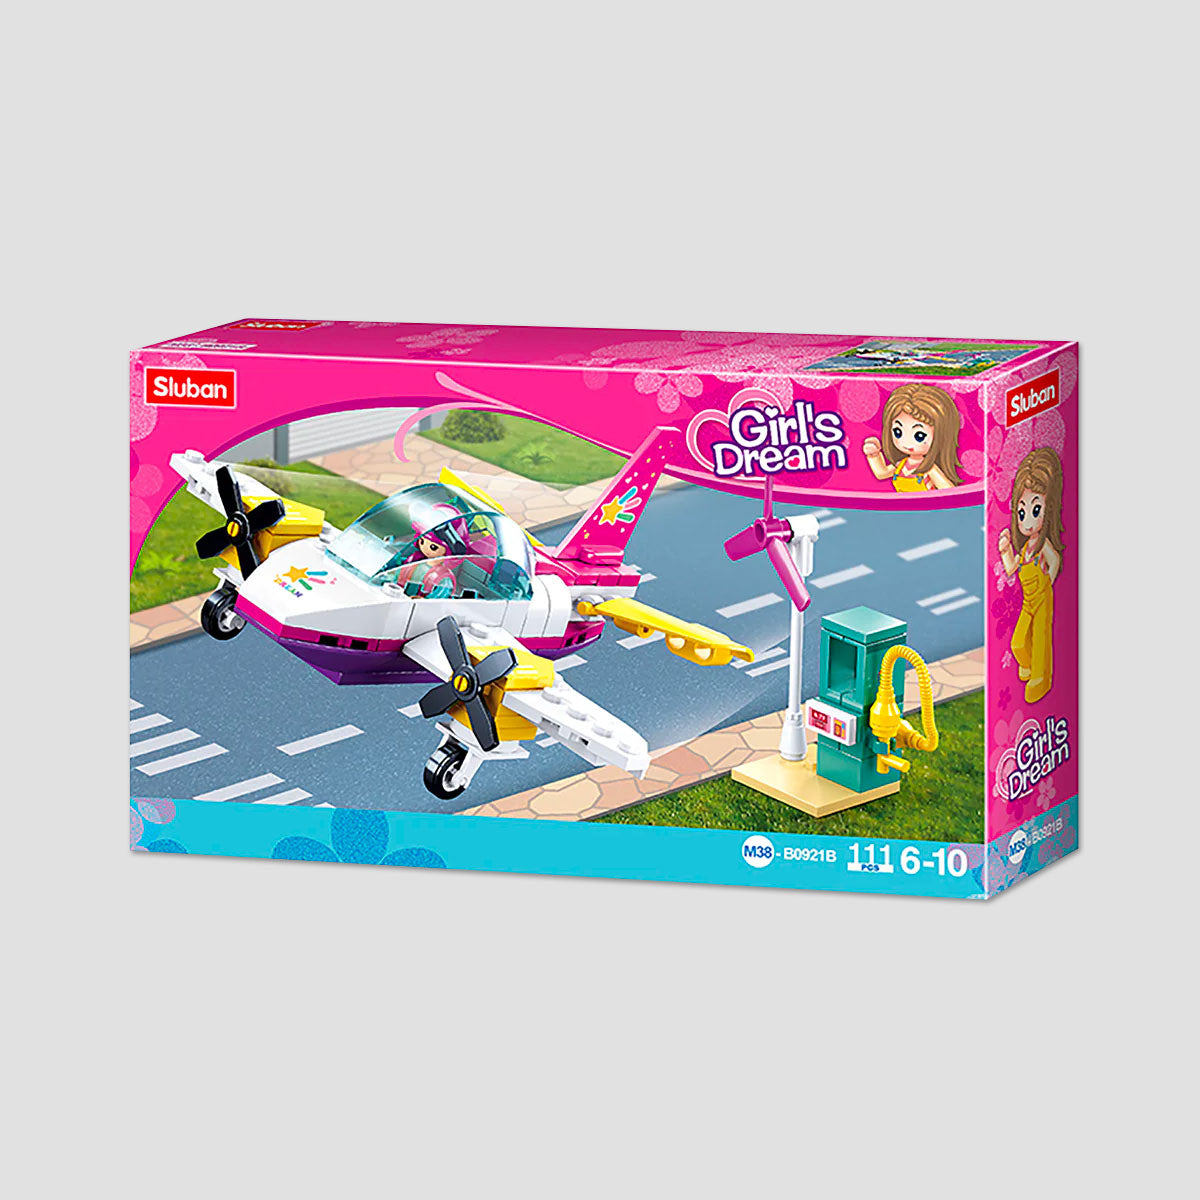 Girls Dream Plane Building Kit